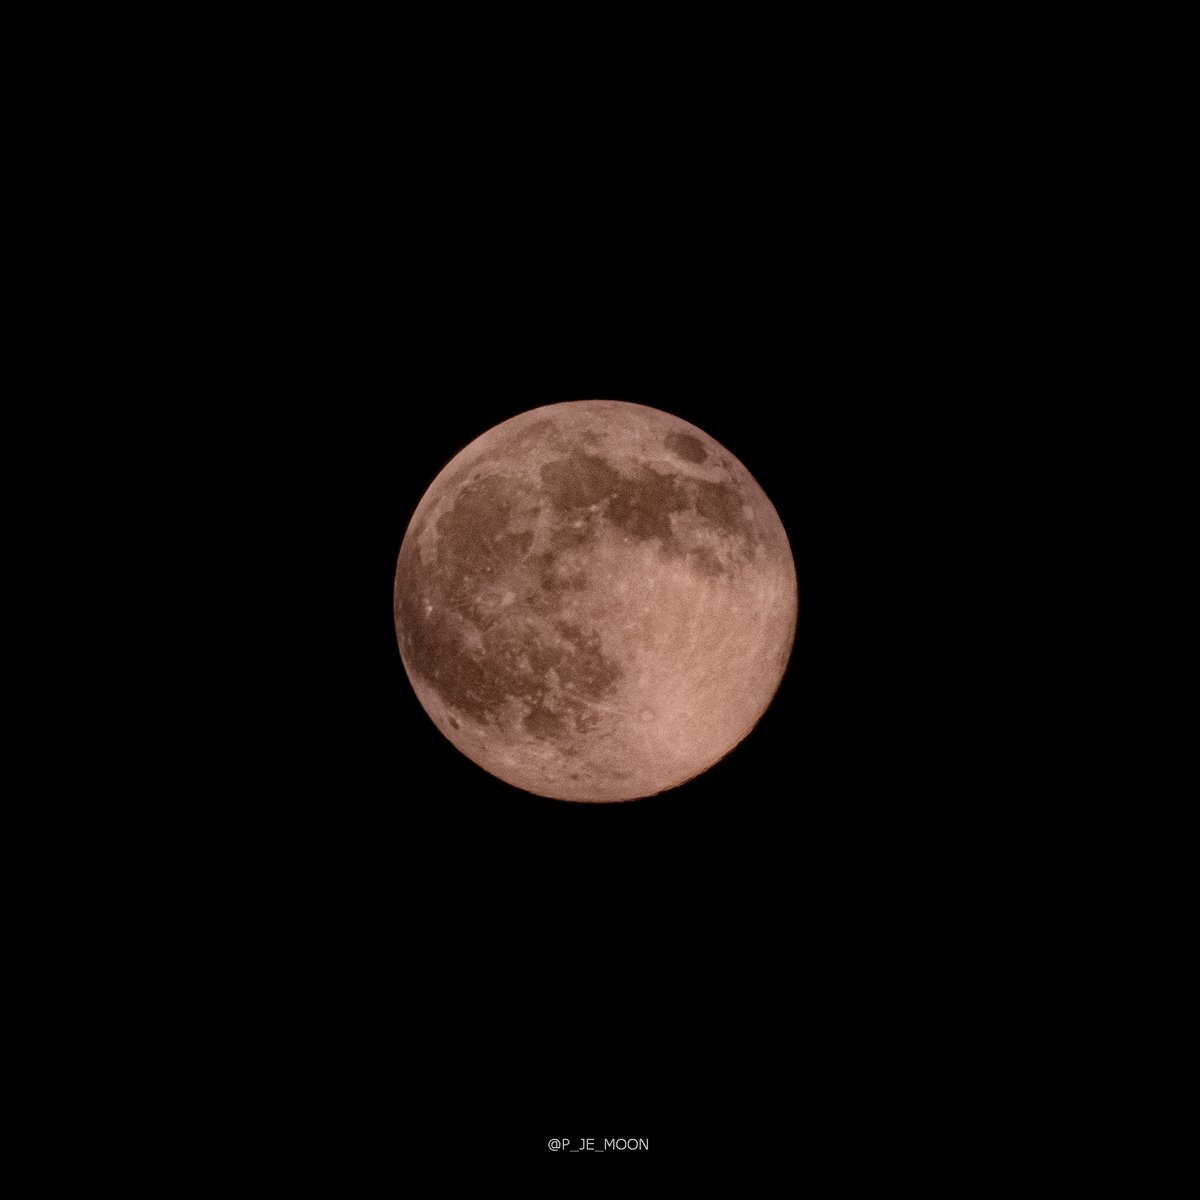 2023.06.04
strawberry moon

#스트로베리문 
#달사진
#오늘달사진
#Canon850D